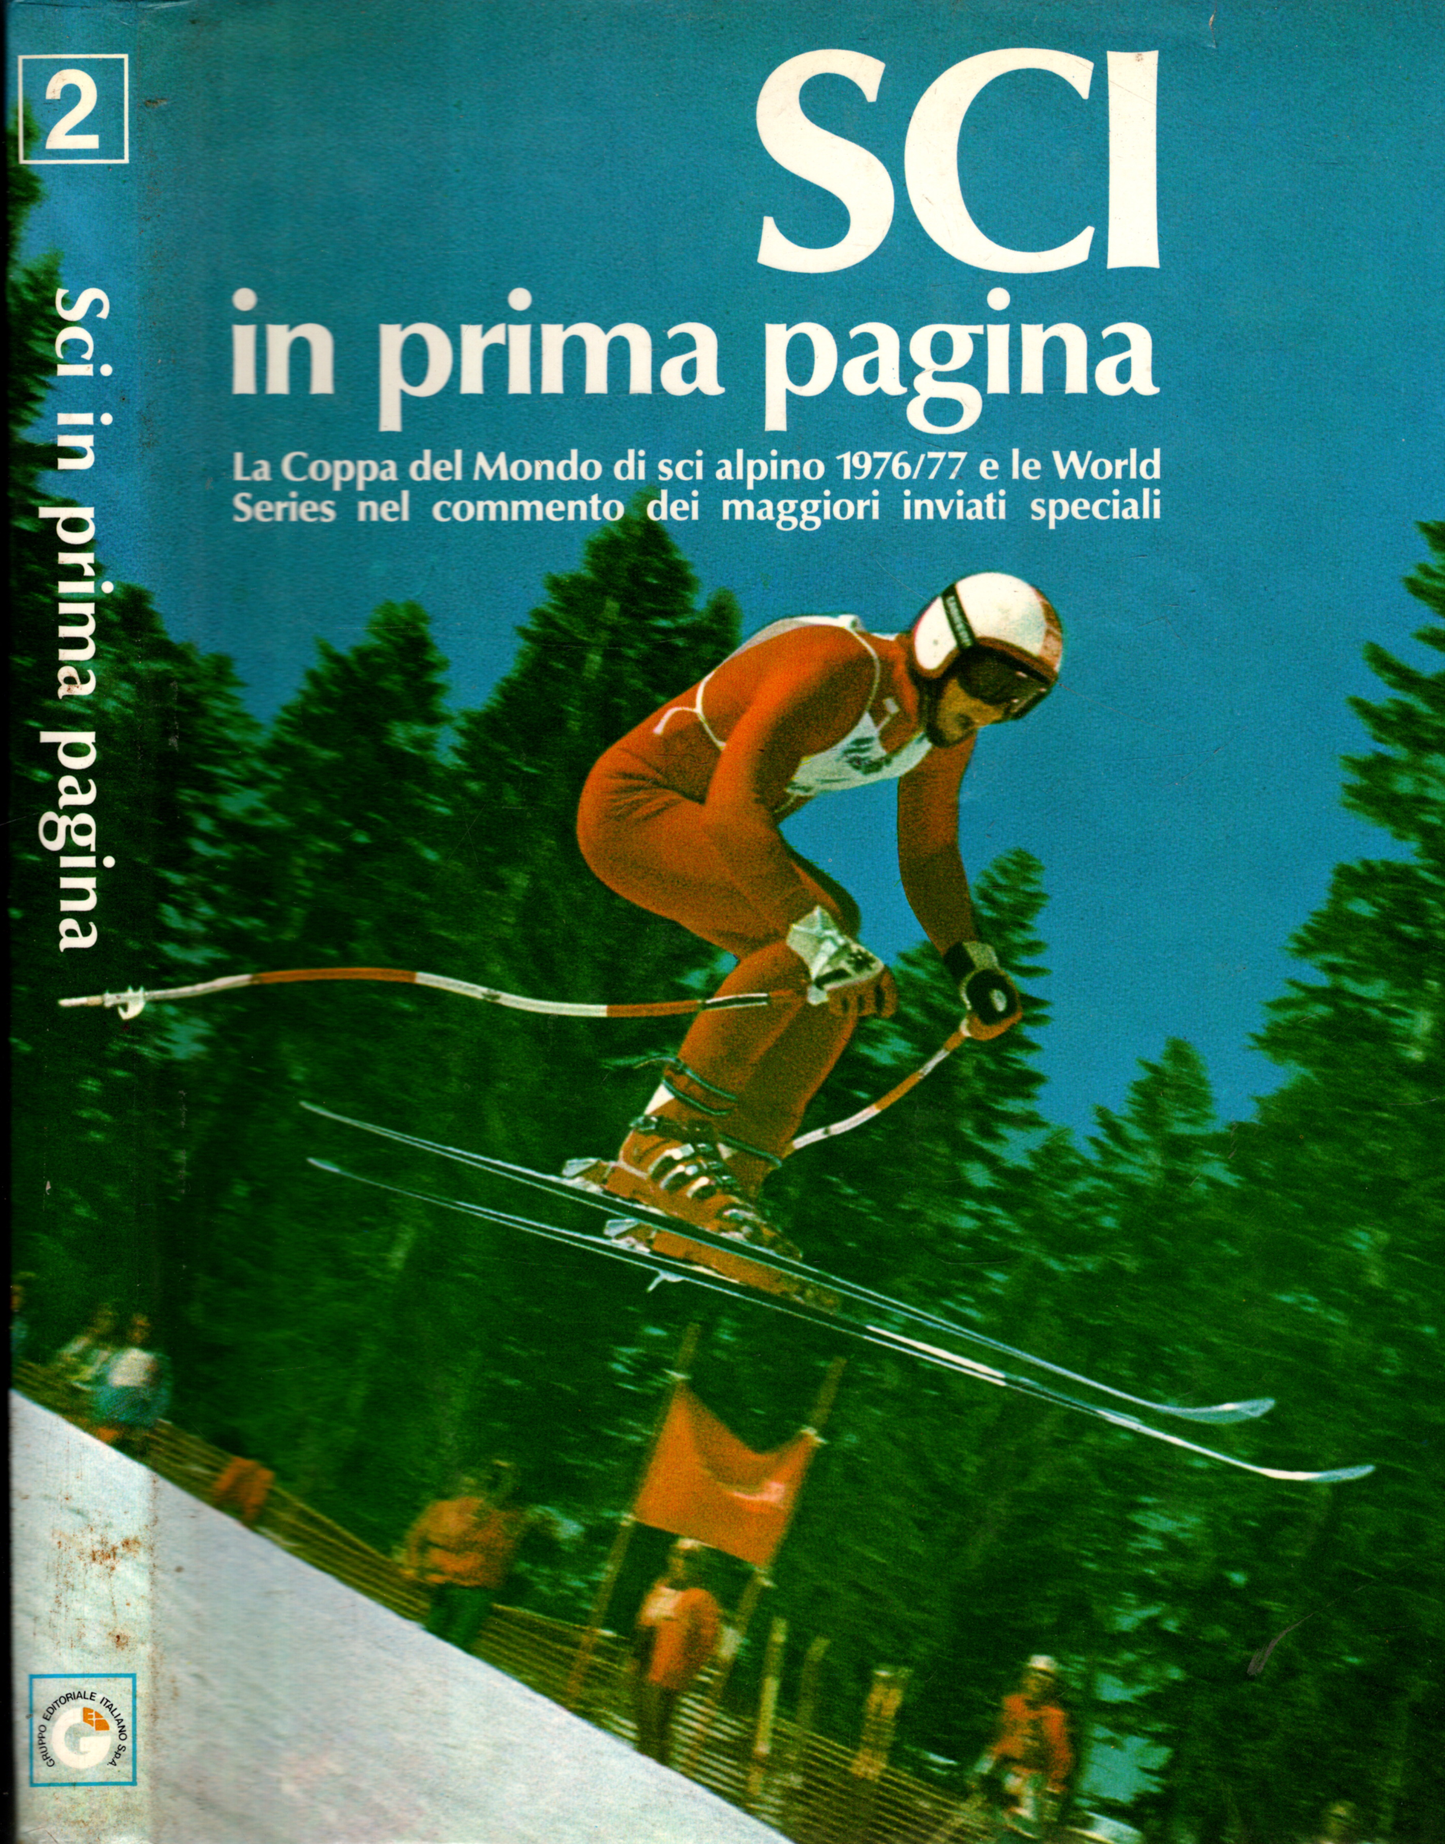 Sci in prima pagina: la Coppa del Mondo di sci alpino 1976/77 e le World Series nel commento dei maggiori inviati speciali